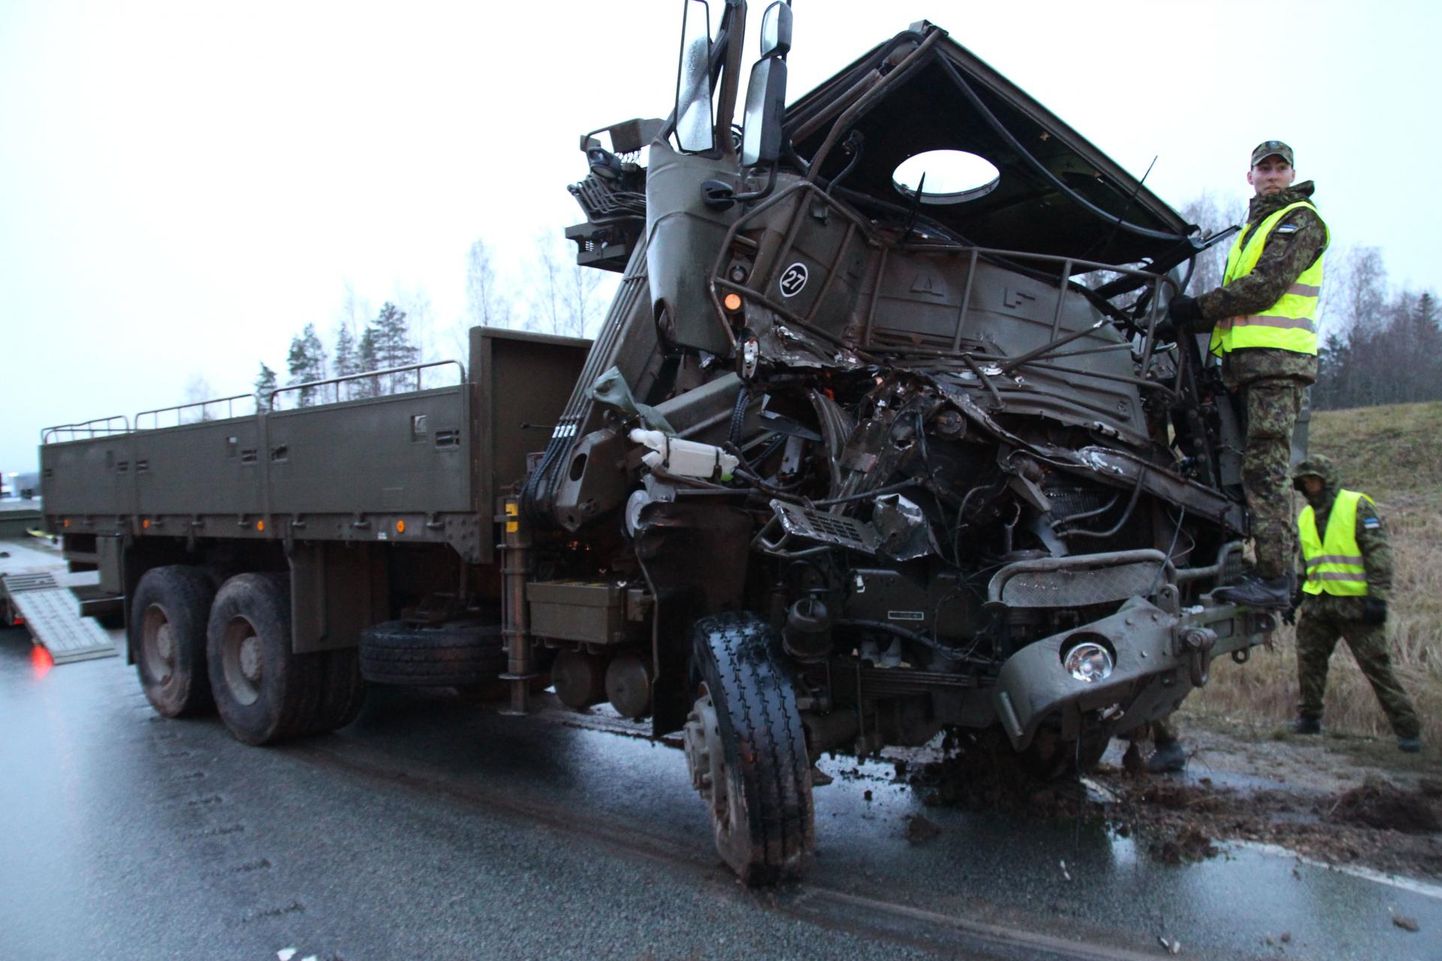 Liiklusõnnetus kaitseväe sõidukitega Põlva ja Tartu maakonna piiril.